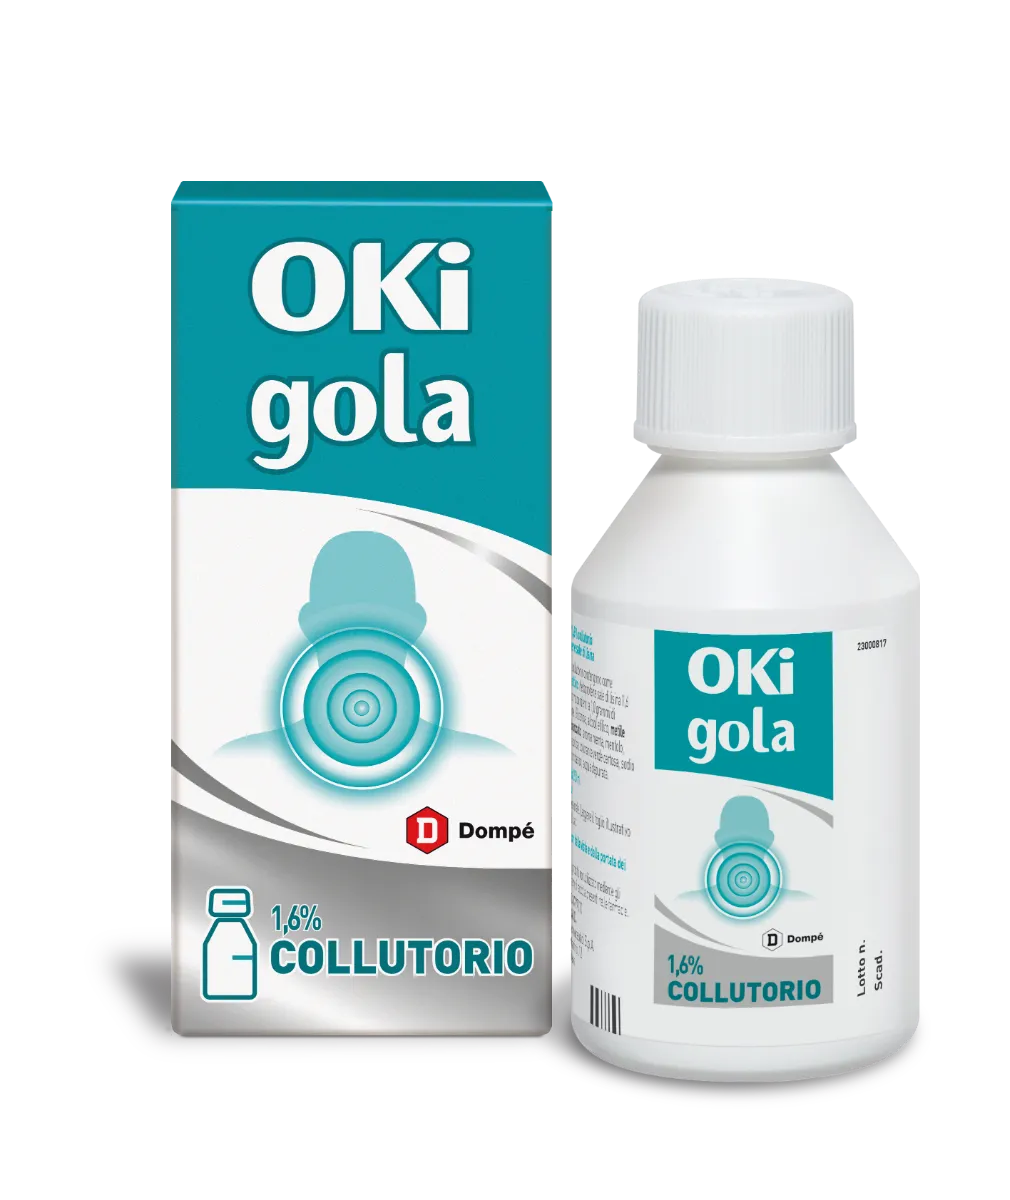 OKI GOLA COLLUTORIO 1,6% 150 ML